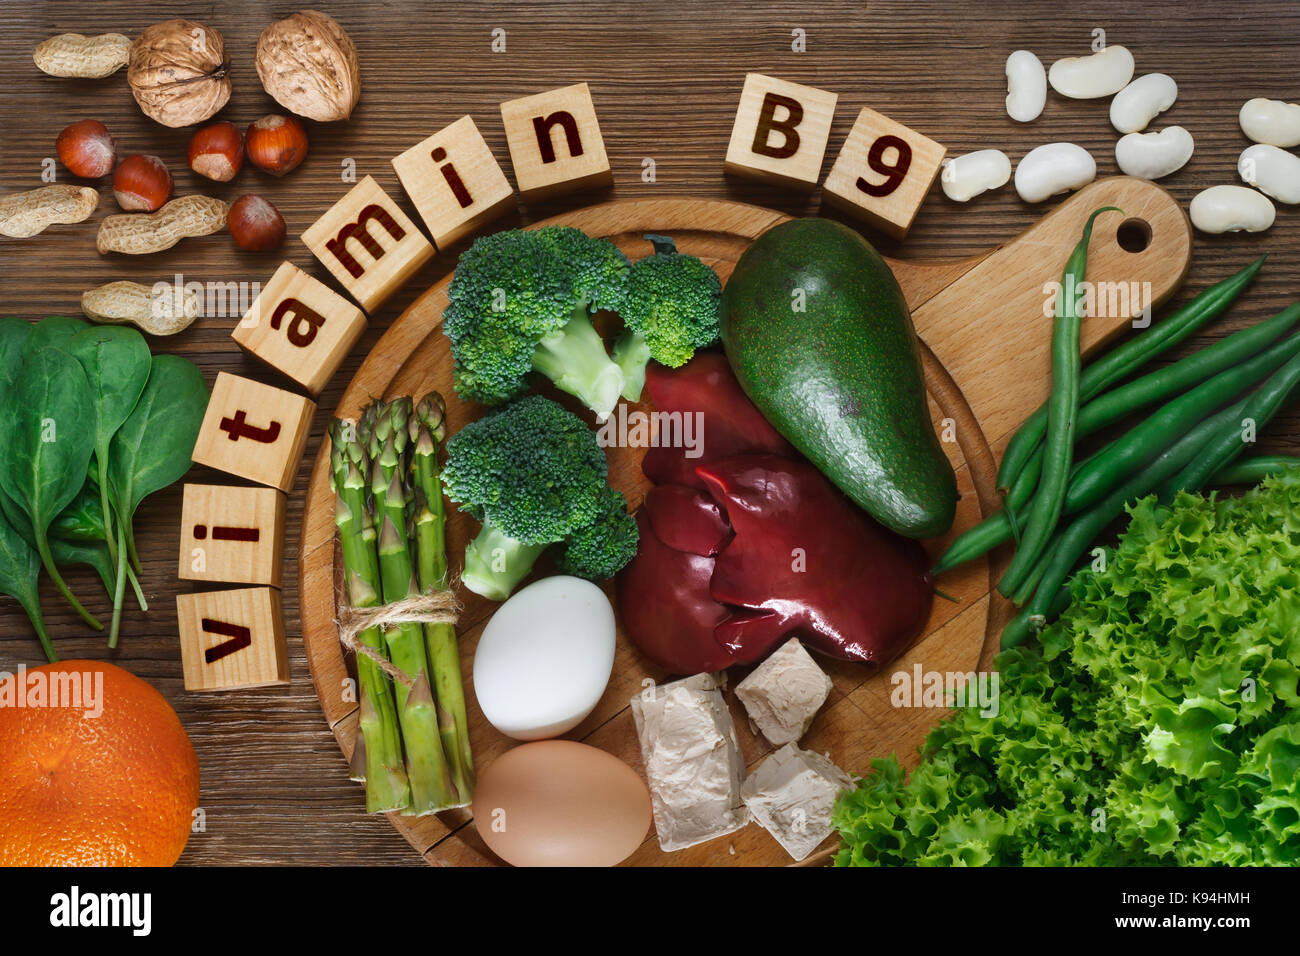 Gli alimenti ricchi di vitamina B9 (acido folico) come fegato, asparagi, broccoli, uova, insalata di avocado, lievito, dadi, spinaci, arancione e fagioli. vista superiore Foto Stock